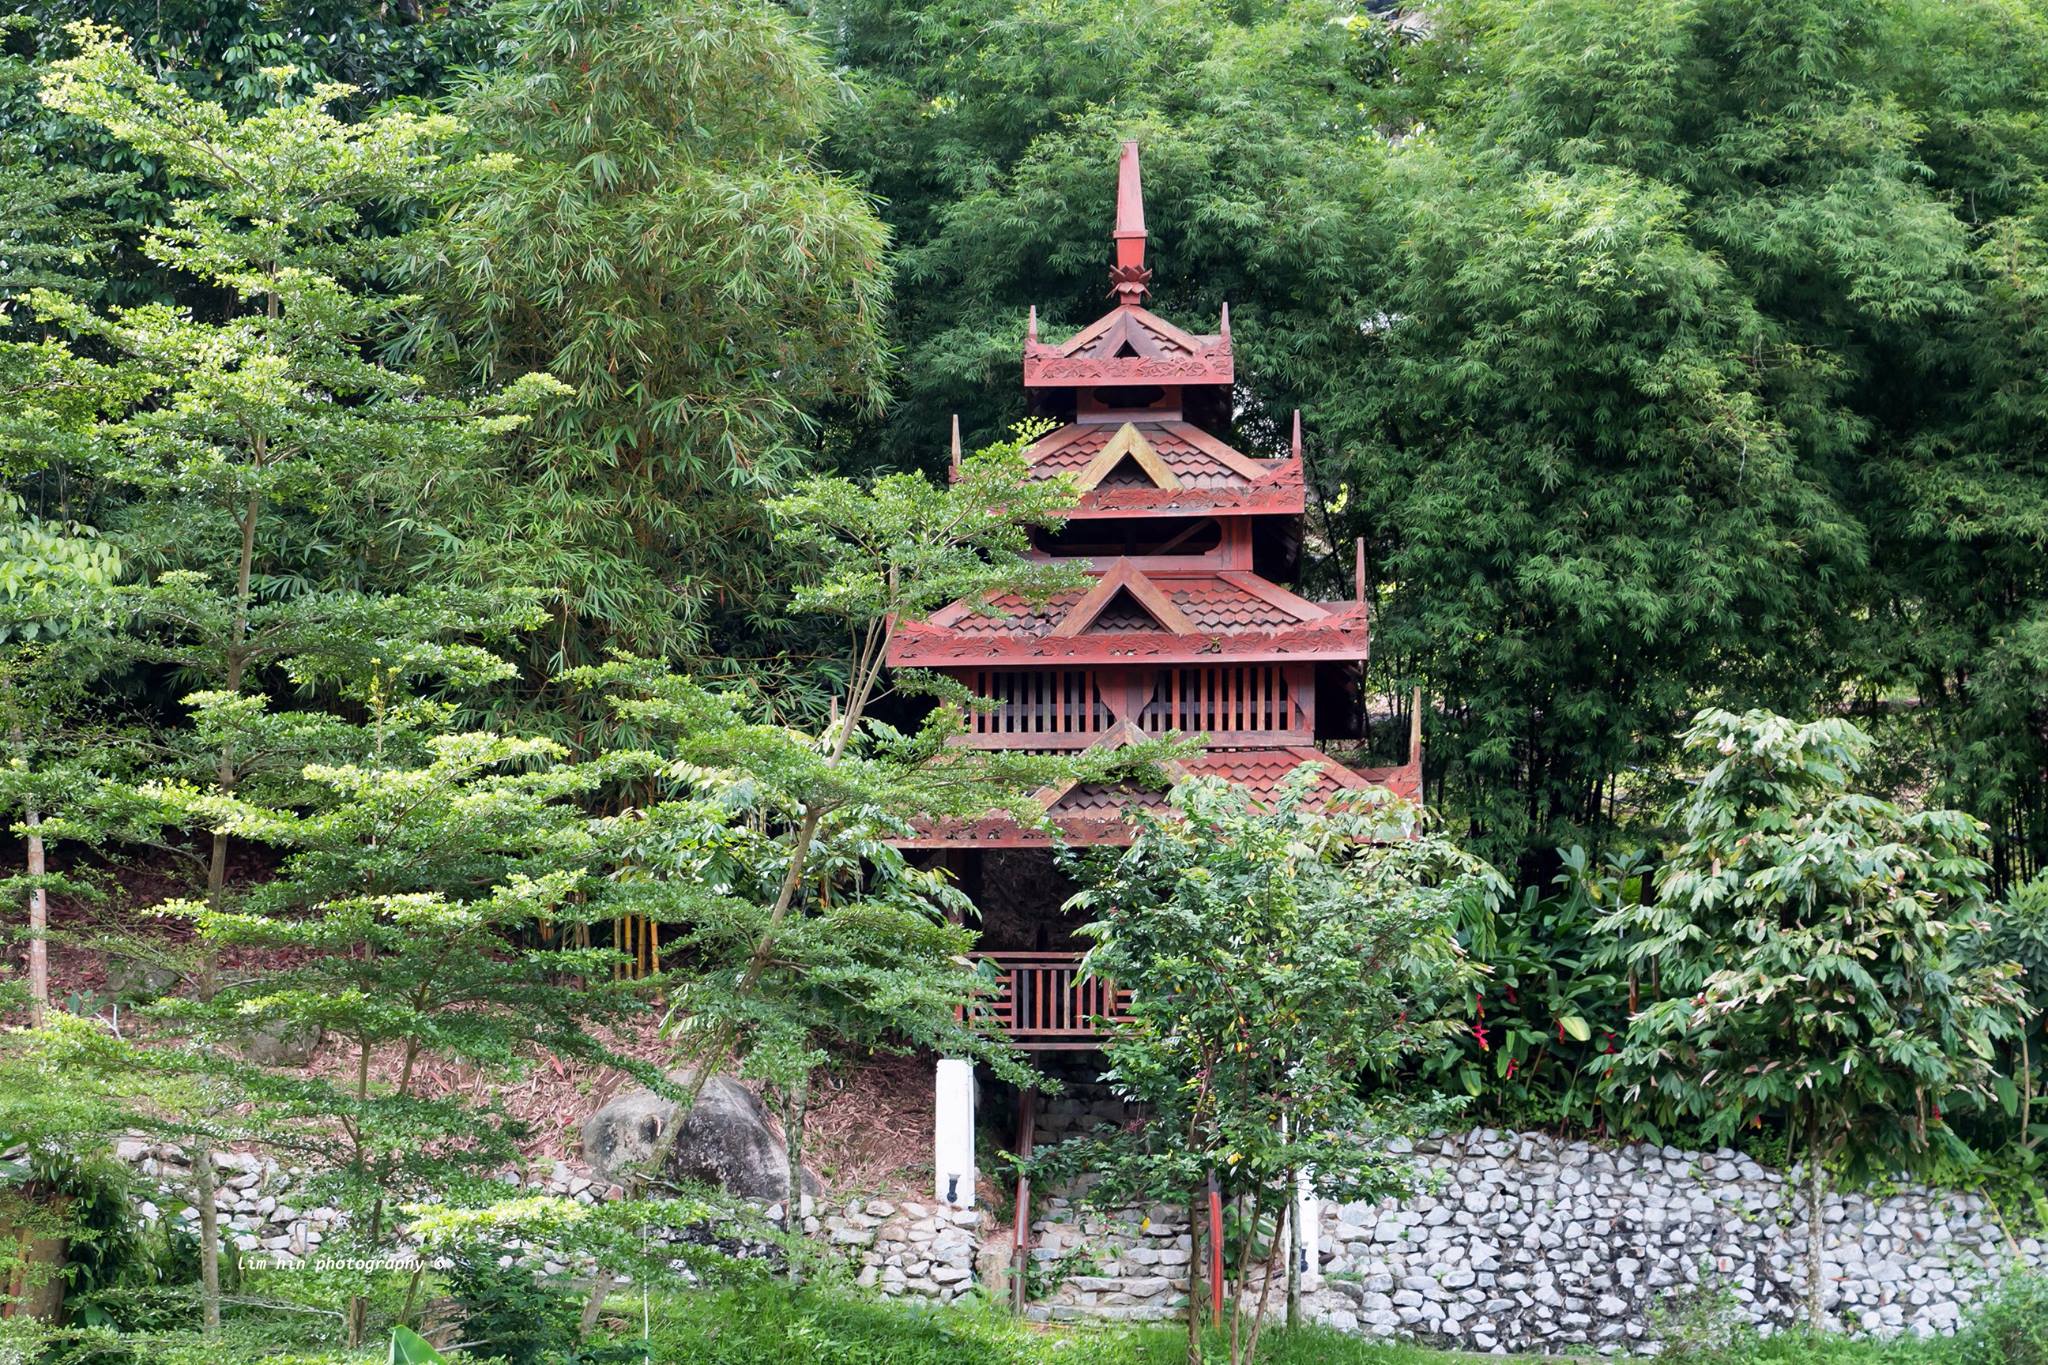 Nandaka Vihara Buddhist Monastery